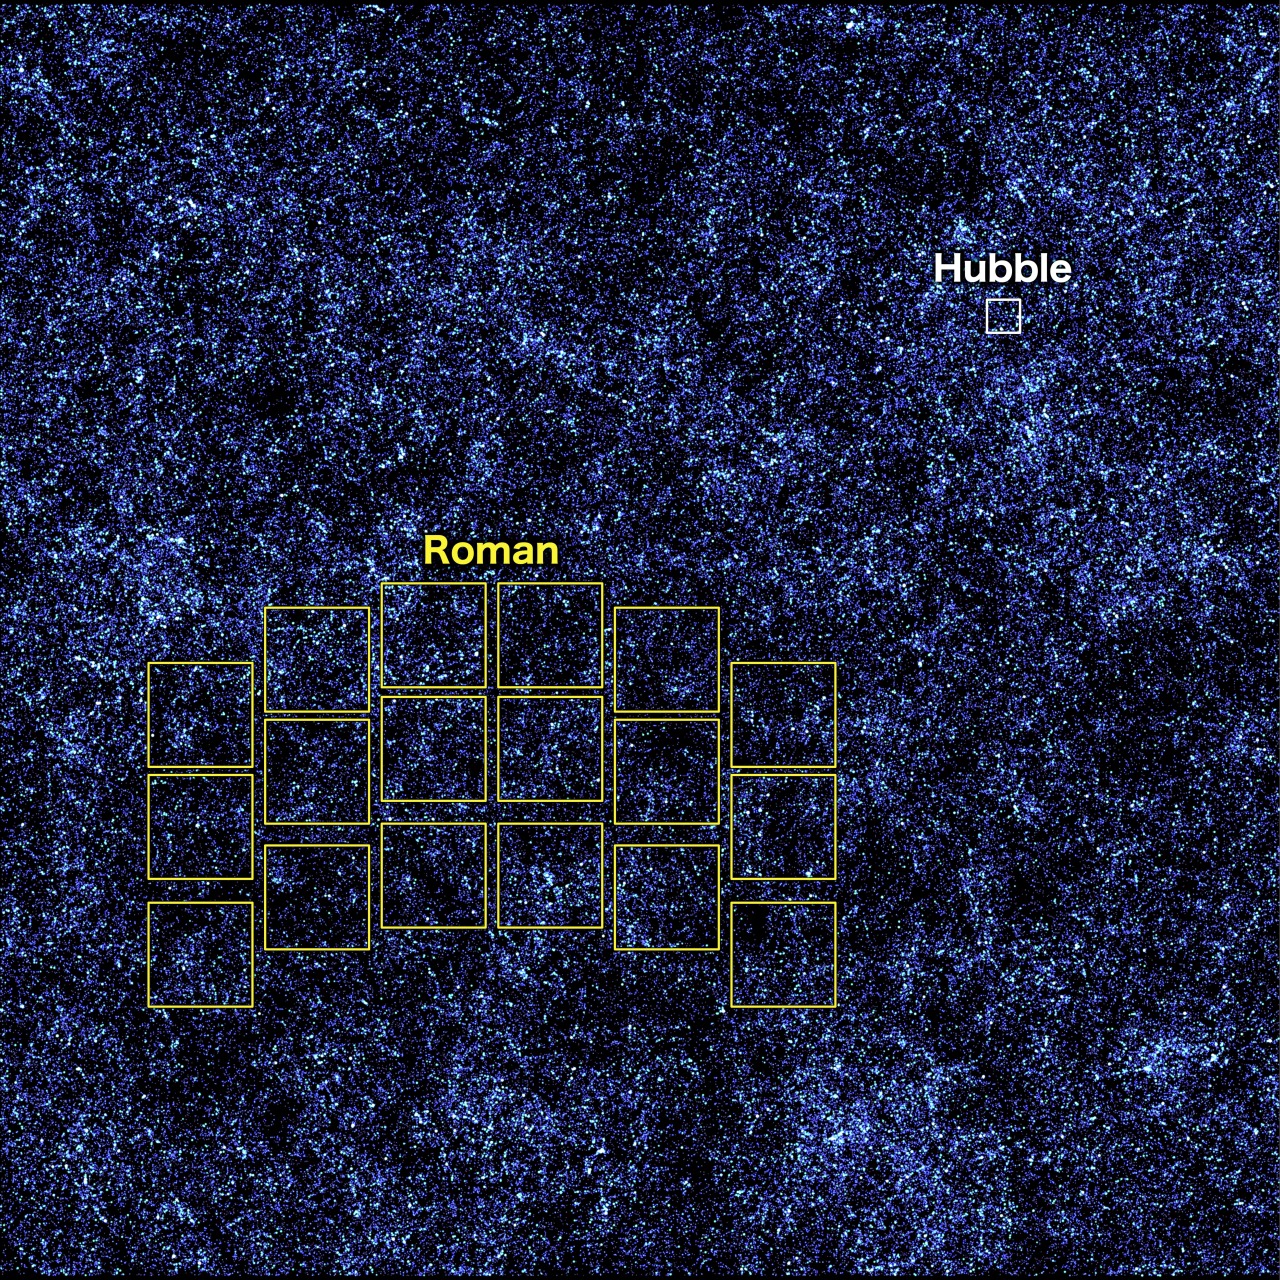 Binlerce küçük, açık ve derin mavi nokta, simüle edilmiş bir evrendeki galaksileri temsil eden siyah bir arka planı kaplar. Küçük beyaz bir kare "Hubble" olarak etiketlenmiştir. Üç eğri sıra halinde yönlendirilmiş 18 çok daha büyük kareden oluşan bir dizi "Roma" olarak etiketlenmiştir. Kredi: NASA'nın Goddard Uzay Uçuş Merkezi ve A. Yung